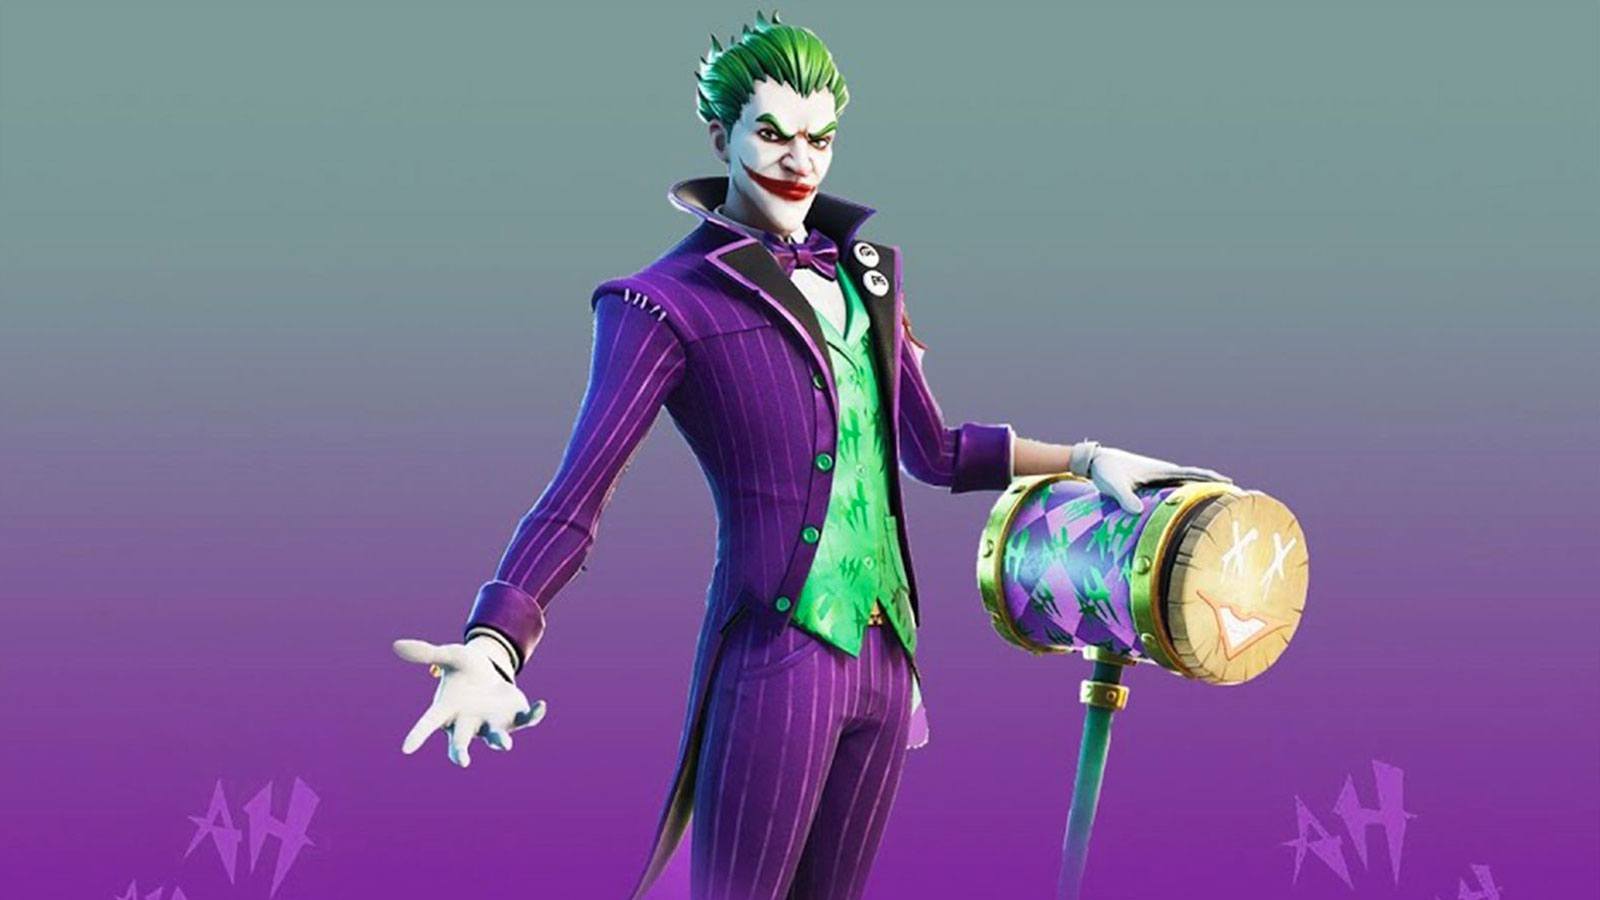 skins Fortnite Epic Games Joker